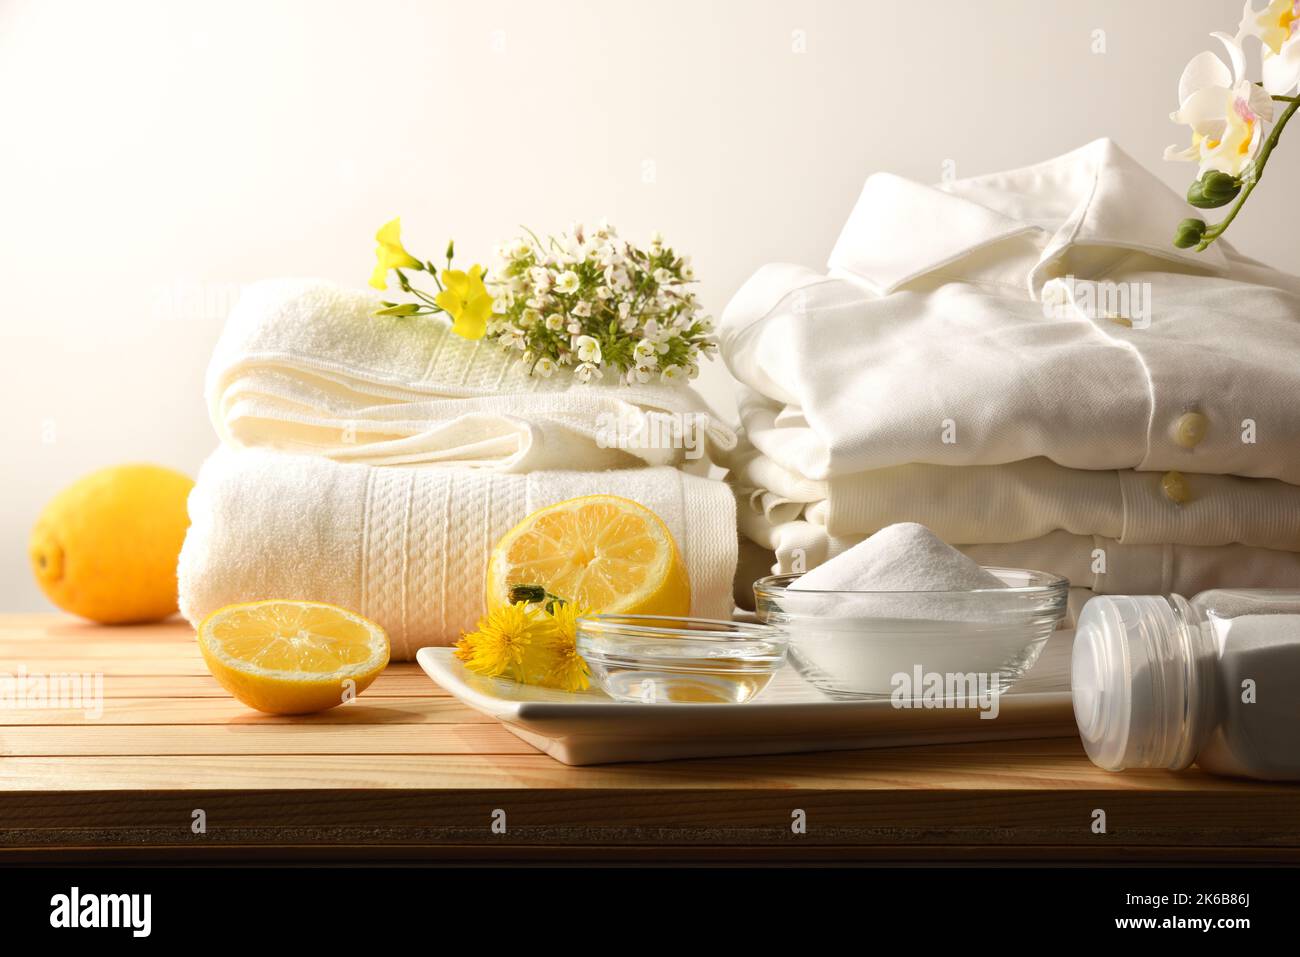 Hausmittel zum nachhaltigen und natürlichen Waschen von Kleidung mit Zitrone, Bikarbonat und Essig mit Kleidung auf einem Holztisch. Draufsicht. Horizont Stockfoto